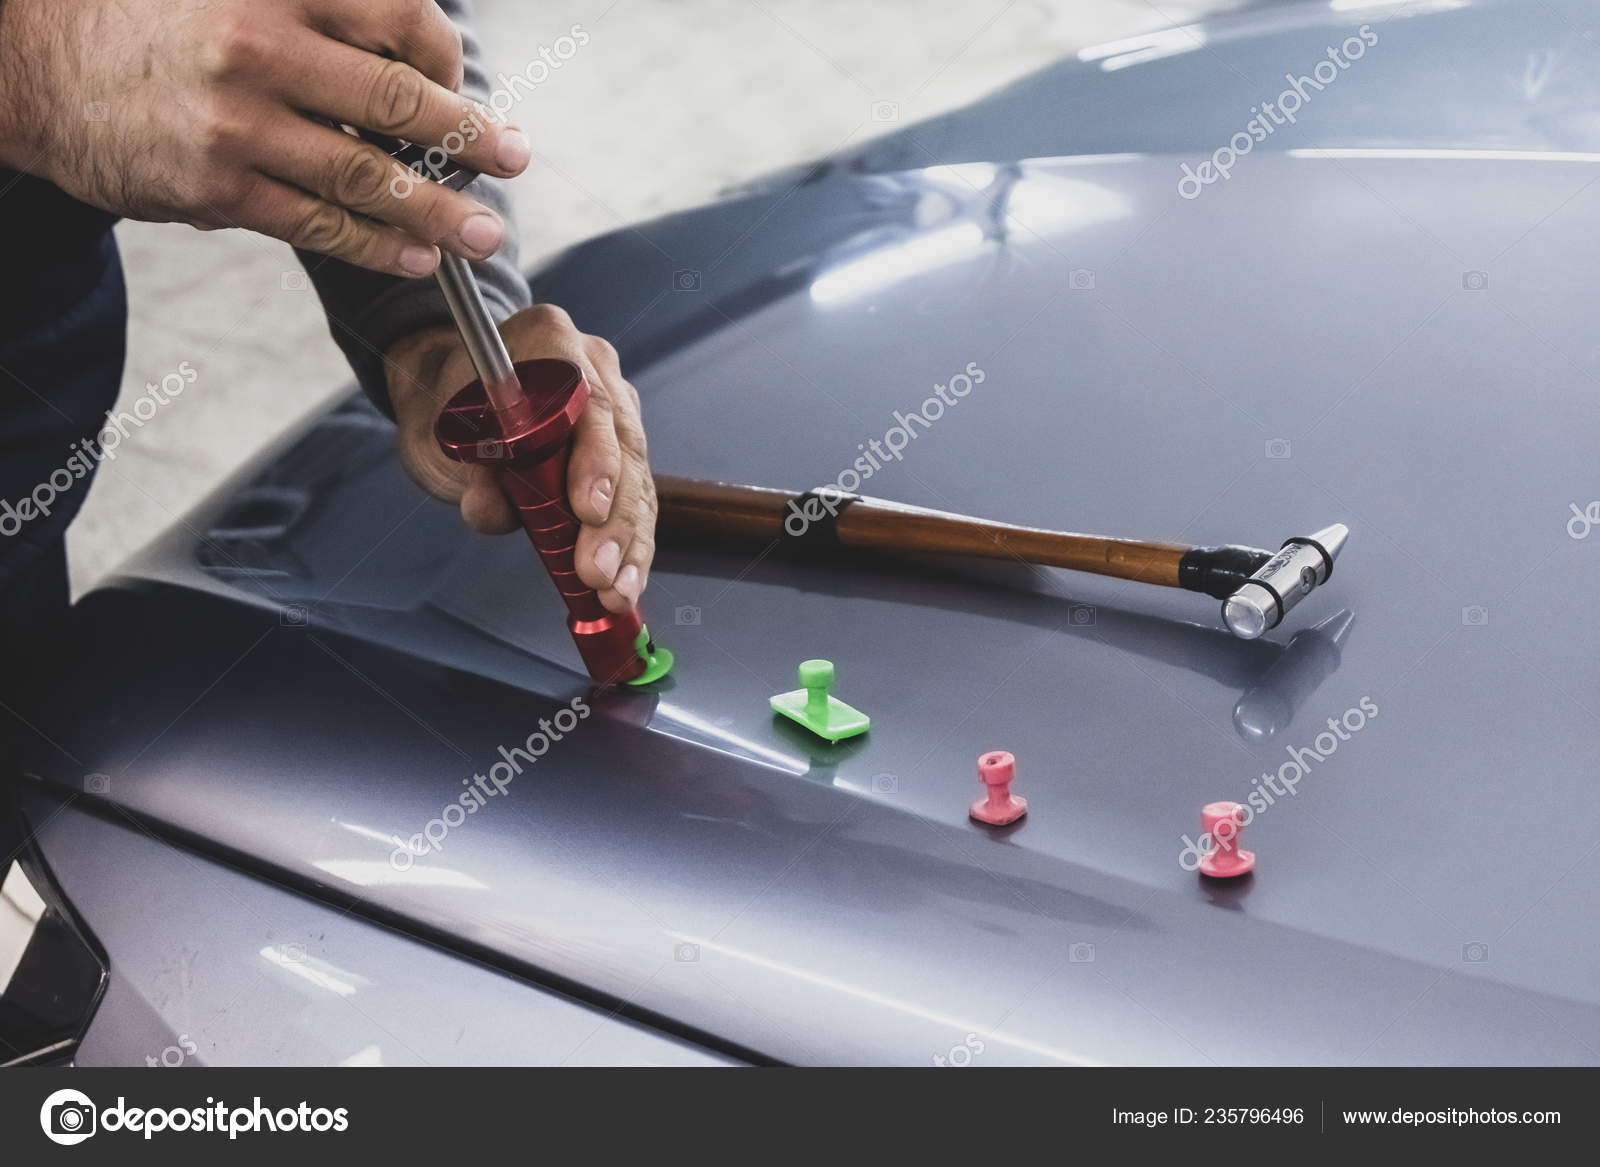 Download - Car Body Repair, Dent Repair, Equipment, Kiss - Stock Image. 